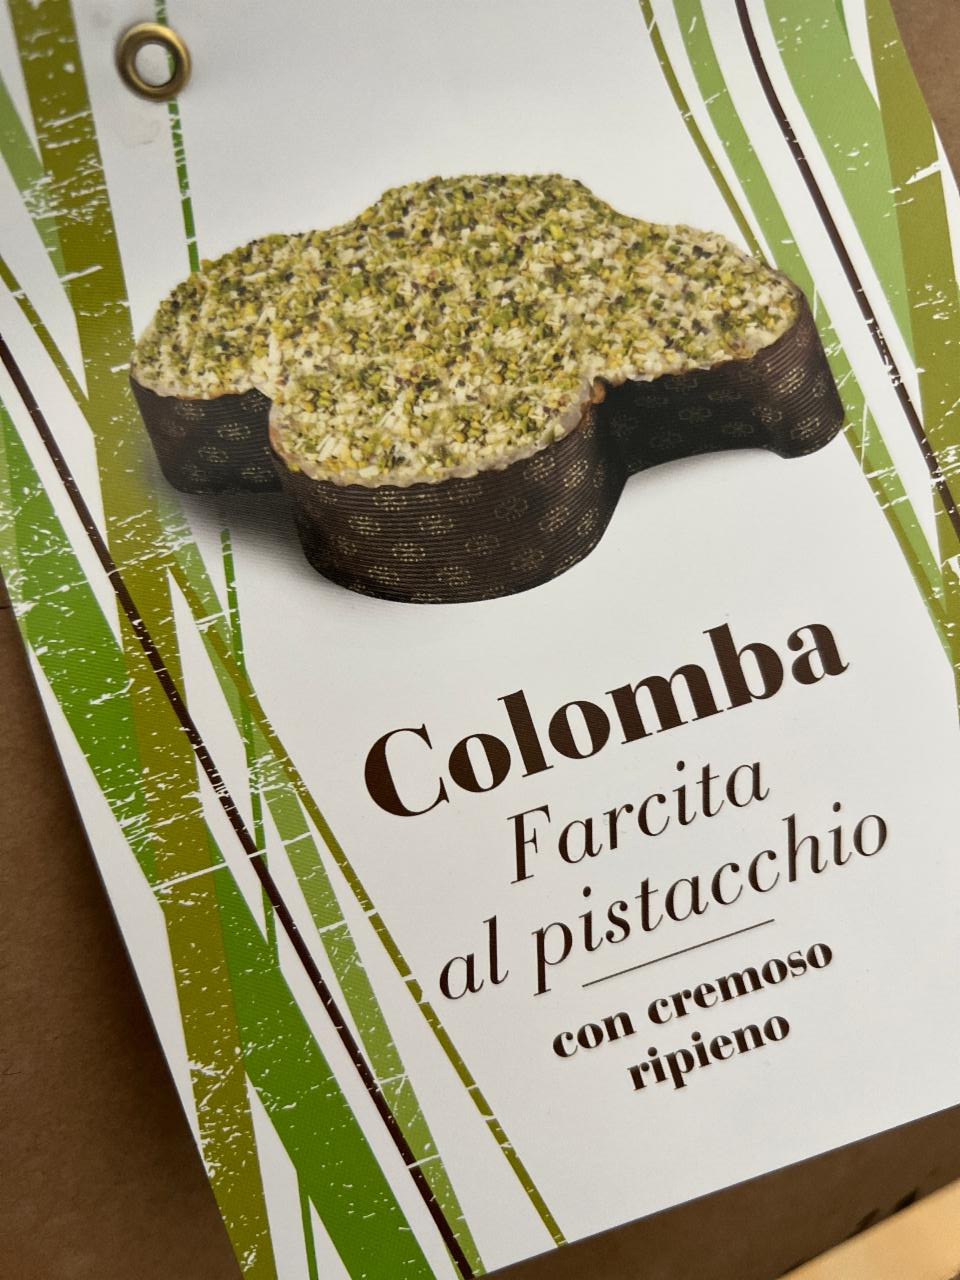 Fotografie - Colombia farcita al pistacchio